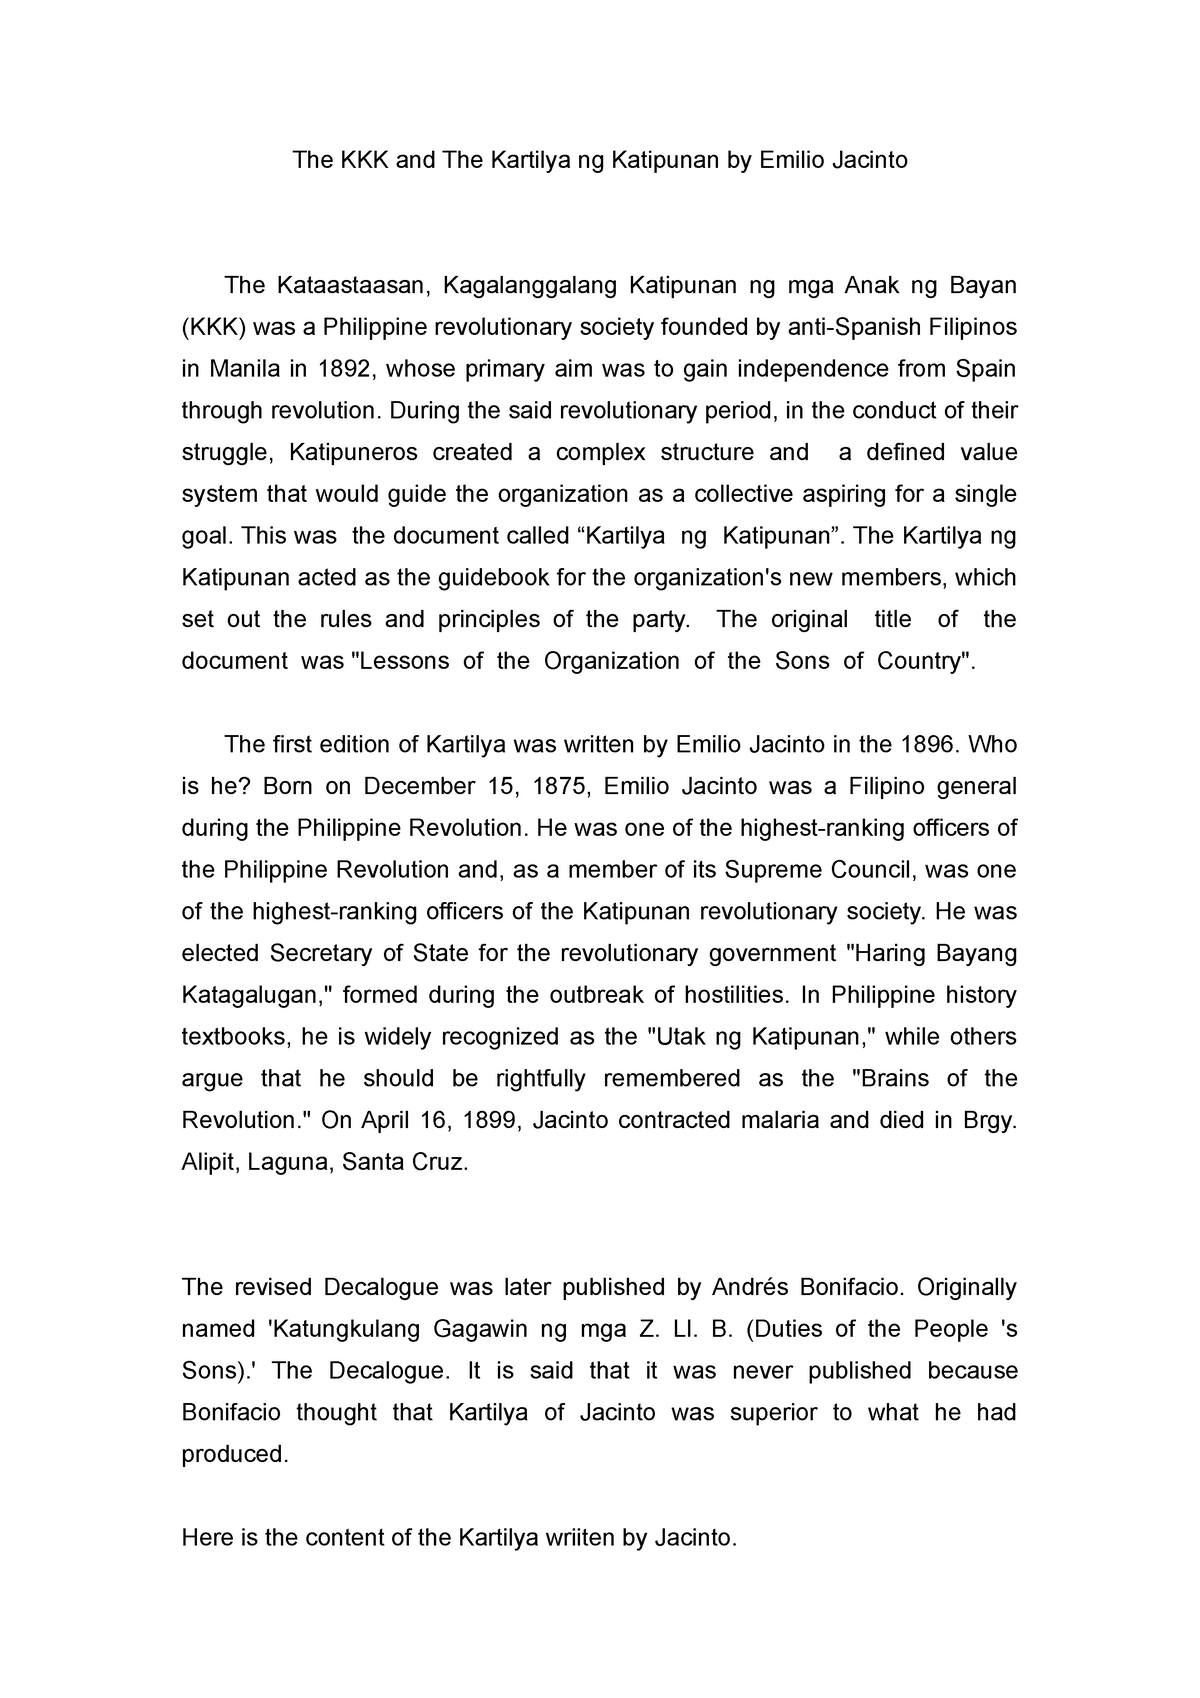 critical essay about the kkk and the kartilya ng katipunan